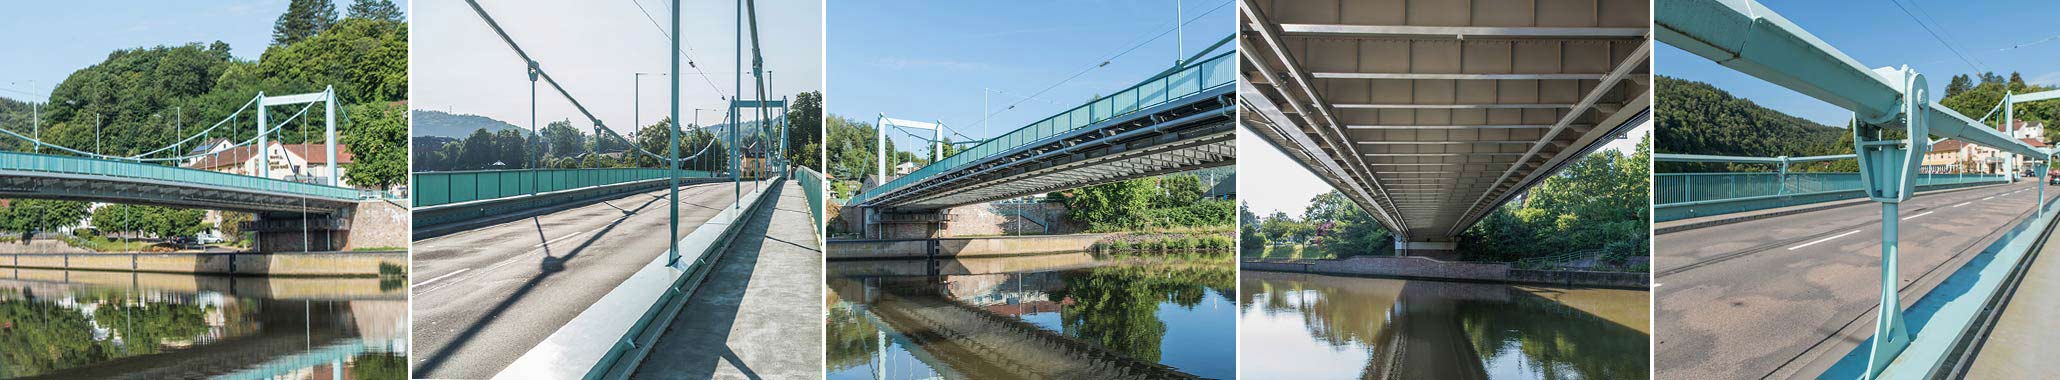 Instandsetzung Hängebrücke Mettlach SBSIngenieure